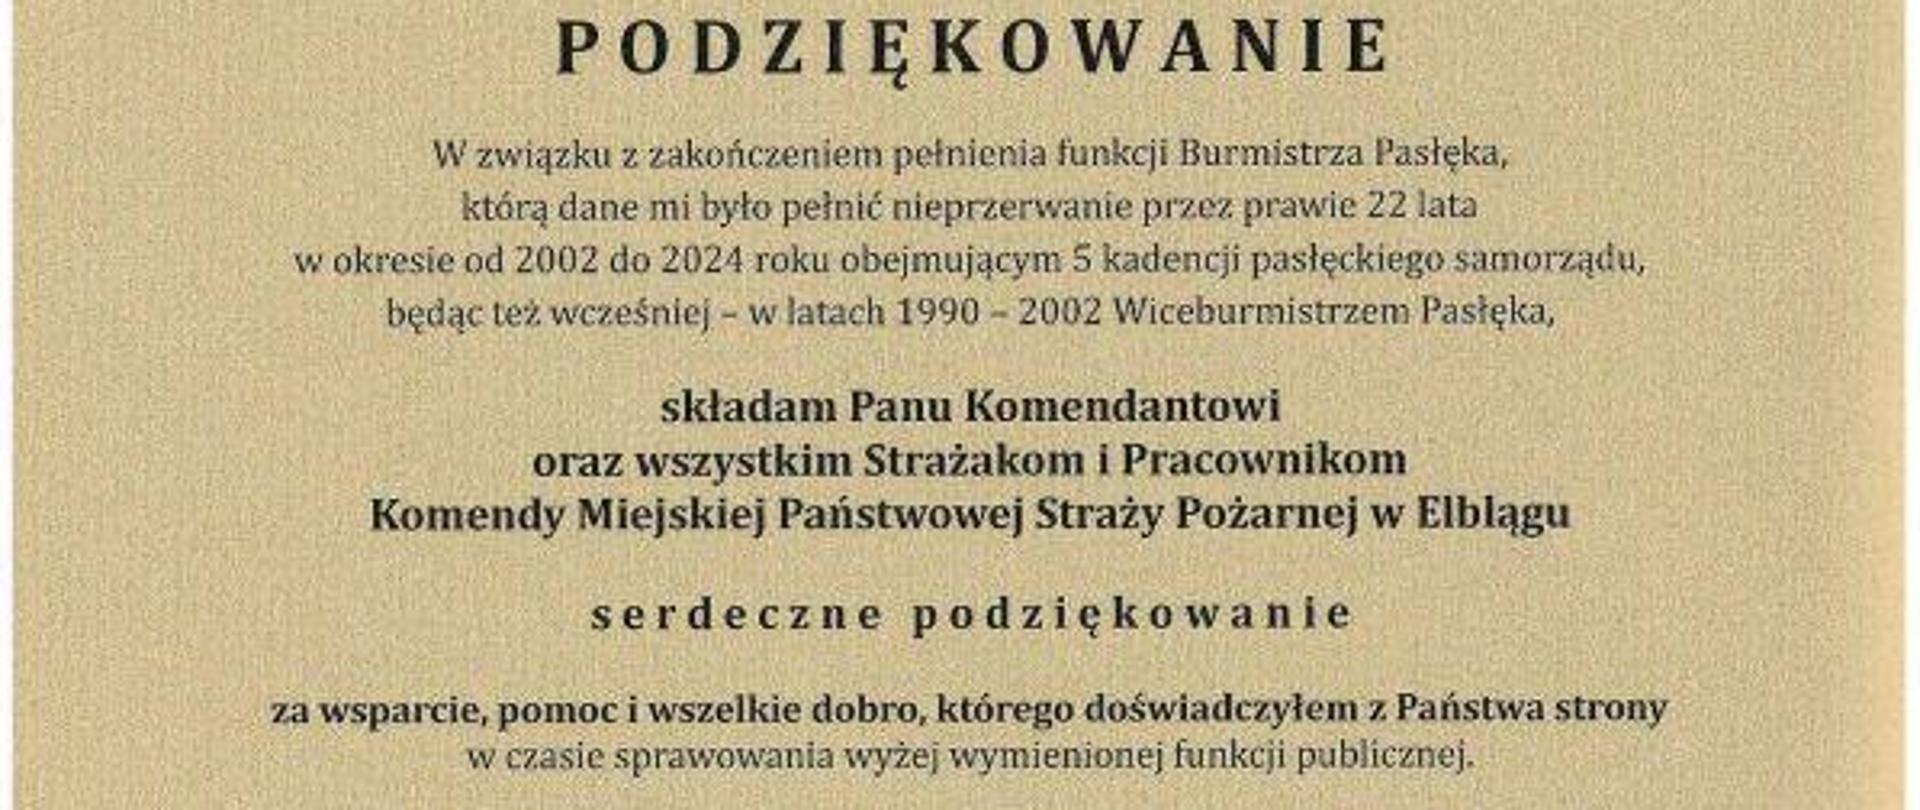 Grafika przedstawia podziękowanie Burmistrza Pasłęka dla Strażaków i Pracowników Komendy Miejskiej Państwowej Straży Pożarnej w Elblągu.